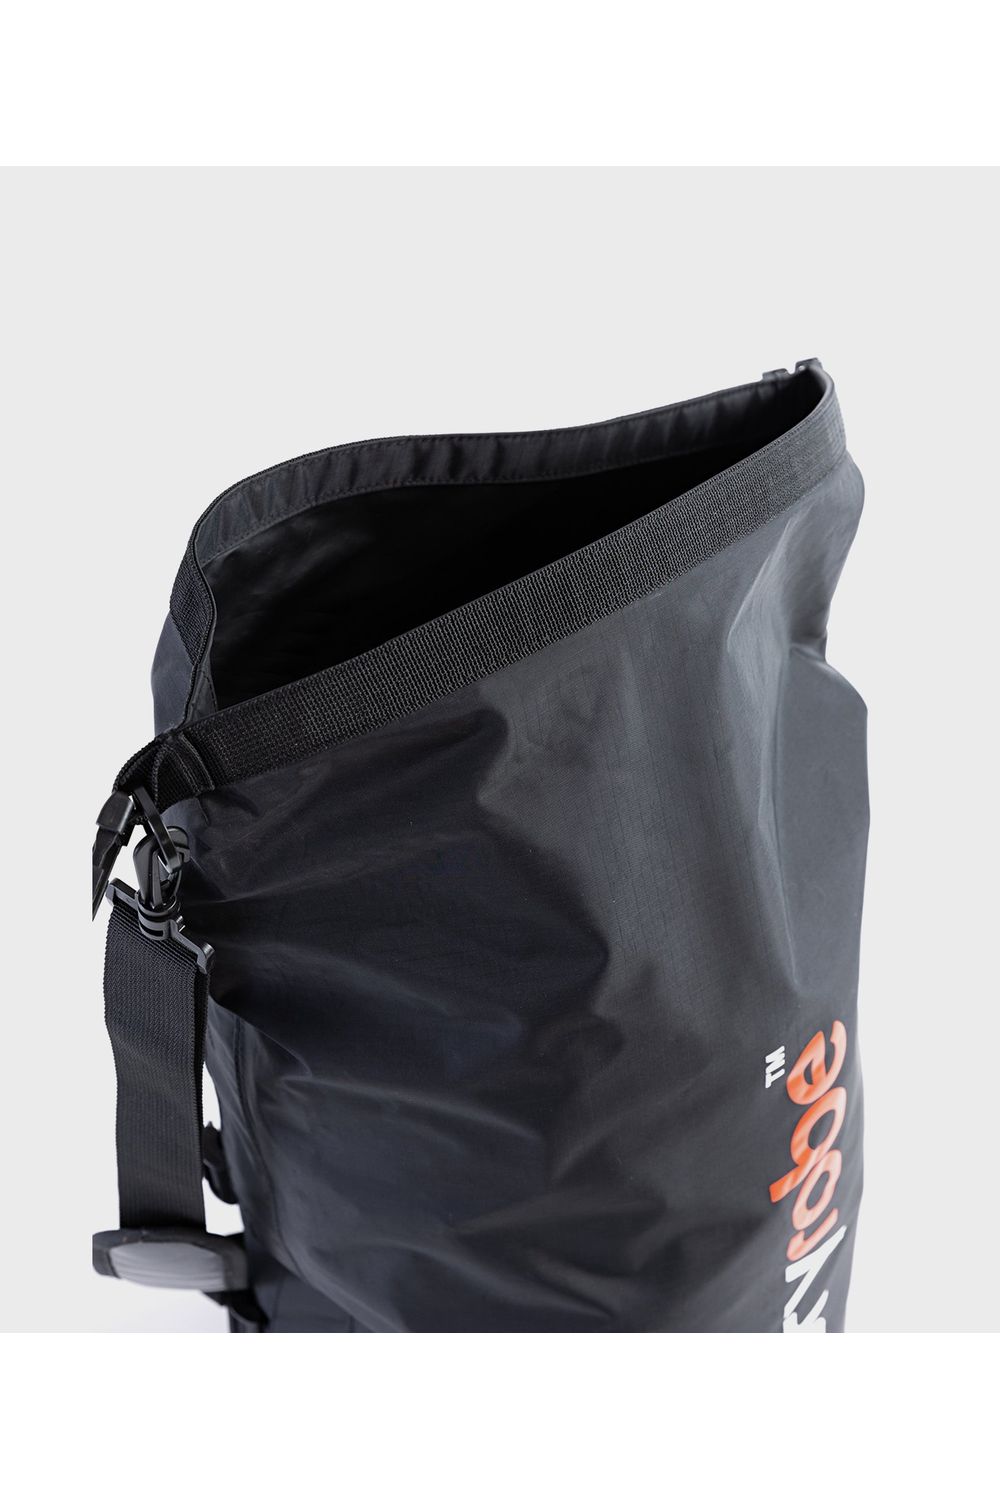 Dryrobe Compression Travel Bag